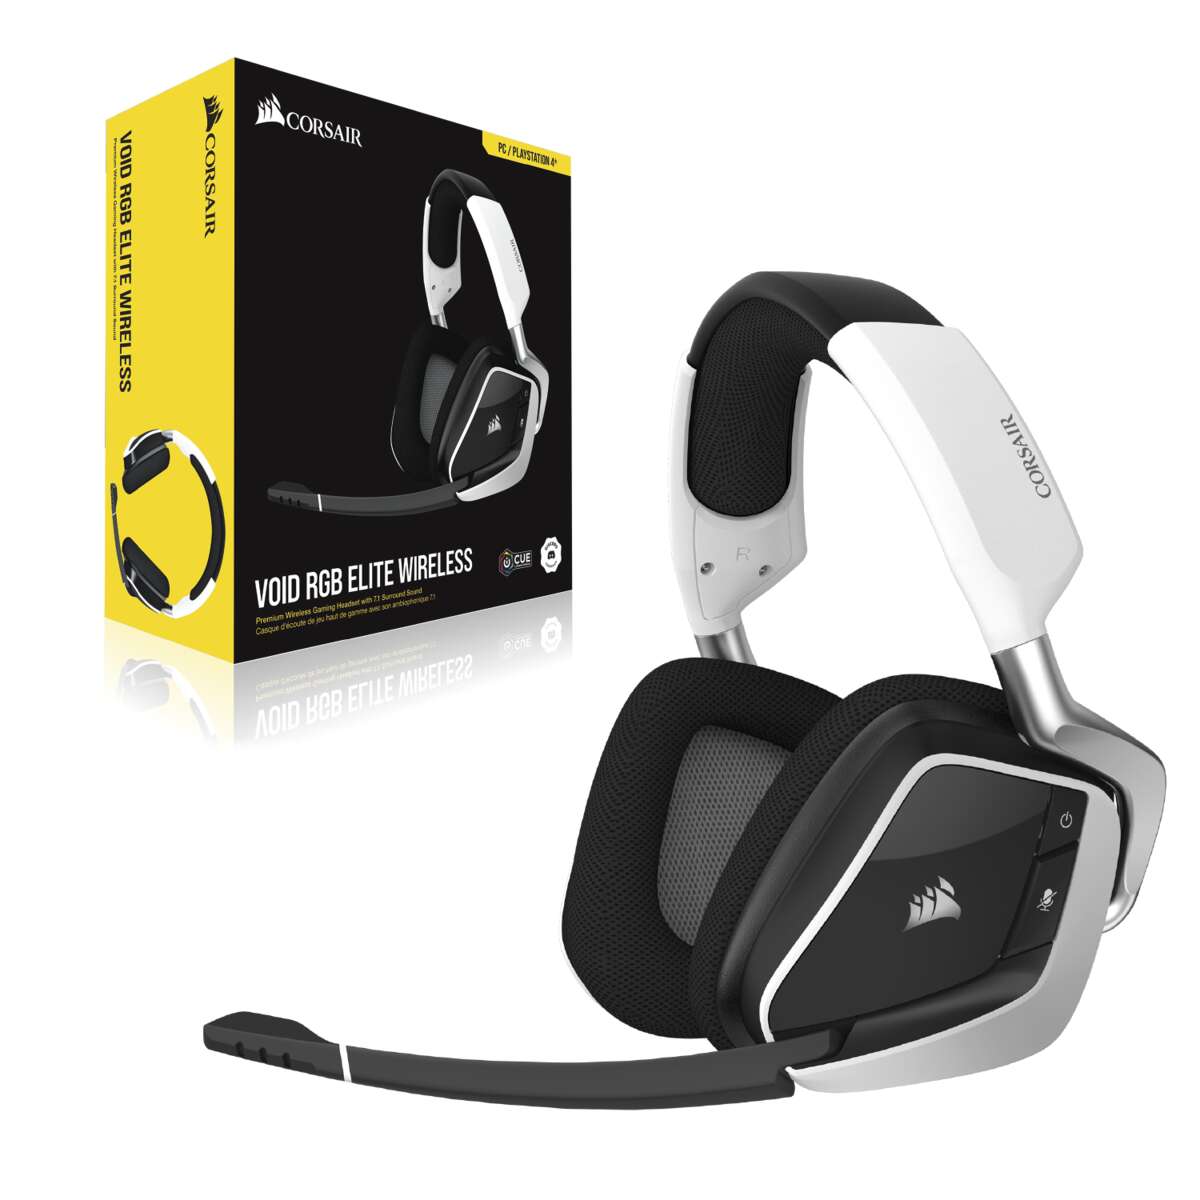 Corsair void rgb elite wireless gaming headset - fekete / fehér